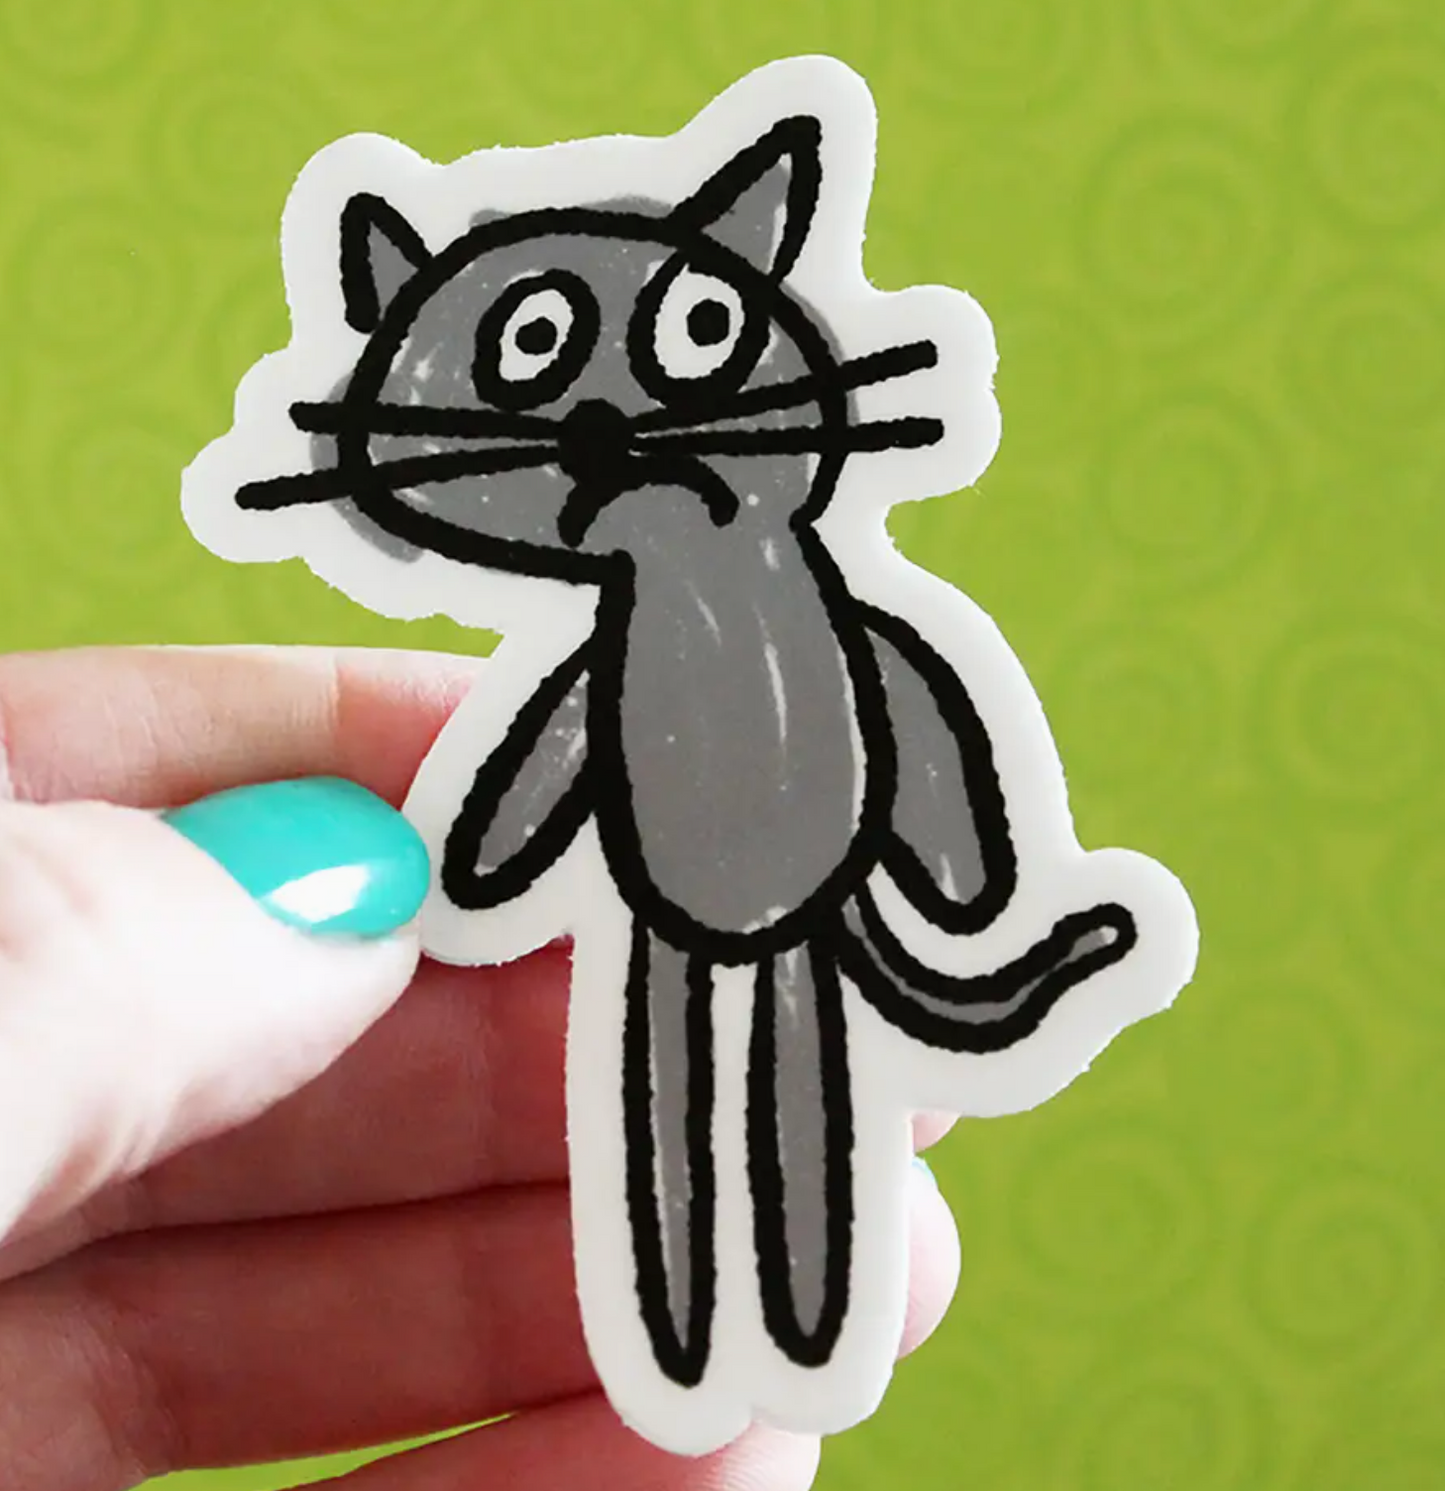 Anxious Cat Sticker